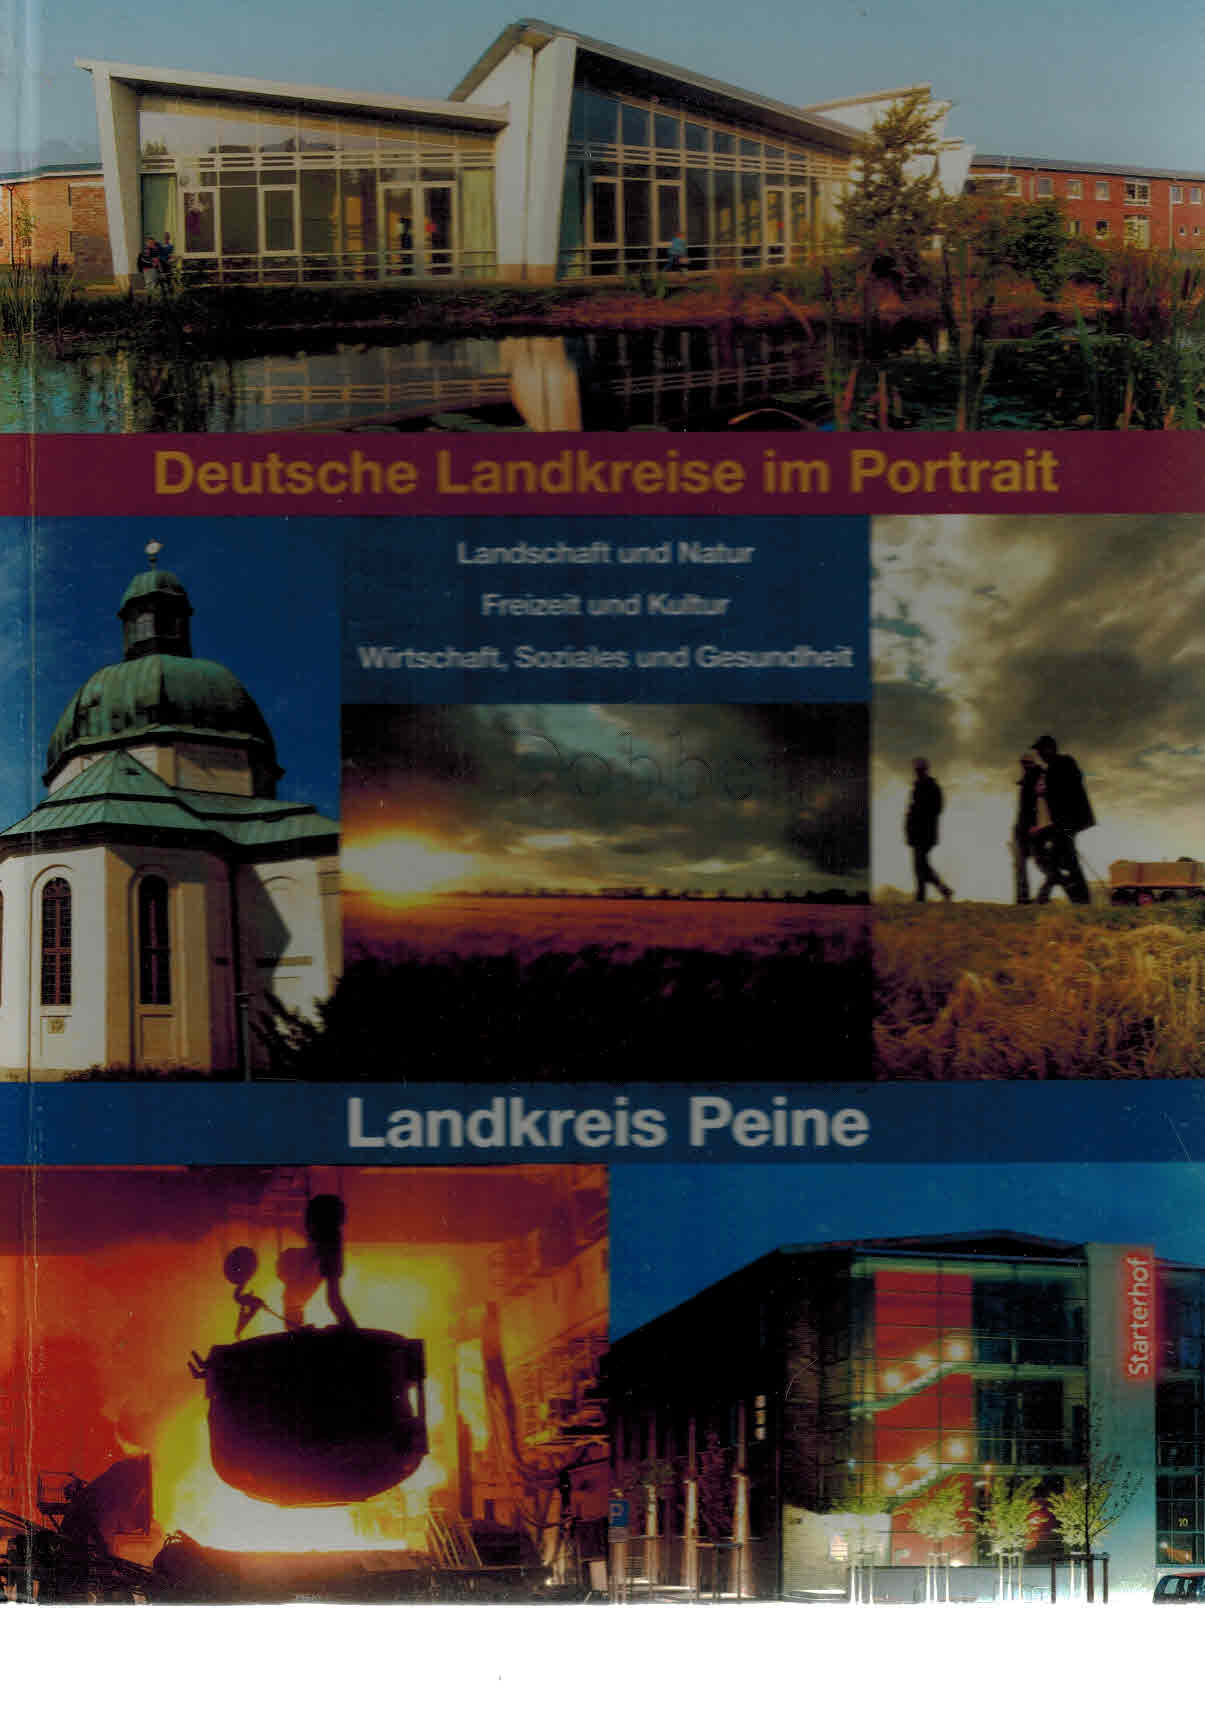 Landkreis Peine. Landschaft und Natur, Freizeit und Kultur, Witschaft, Soziales und Gesundheit. 2. Auflage - Schröder (Redaktion), Katja